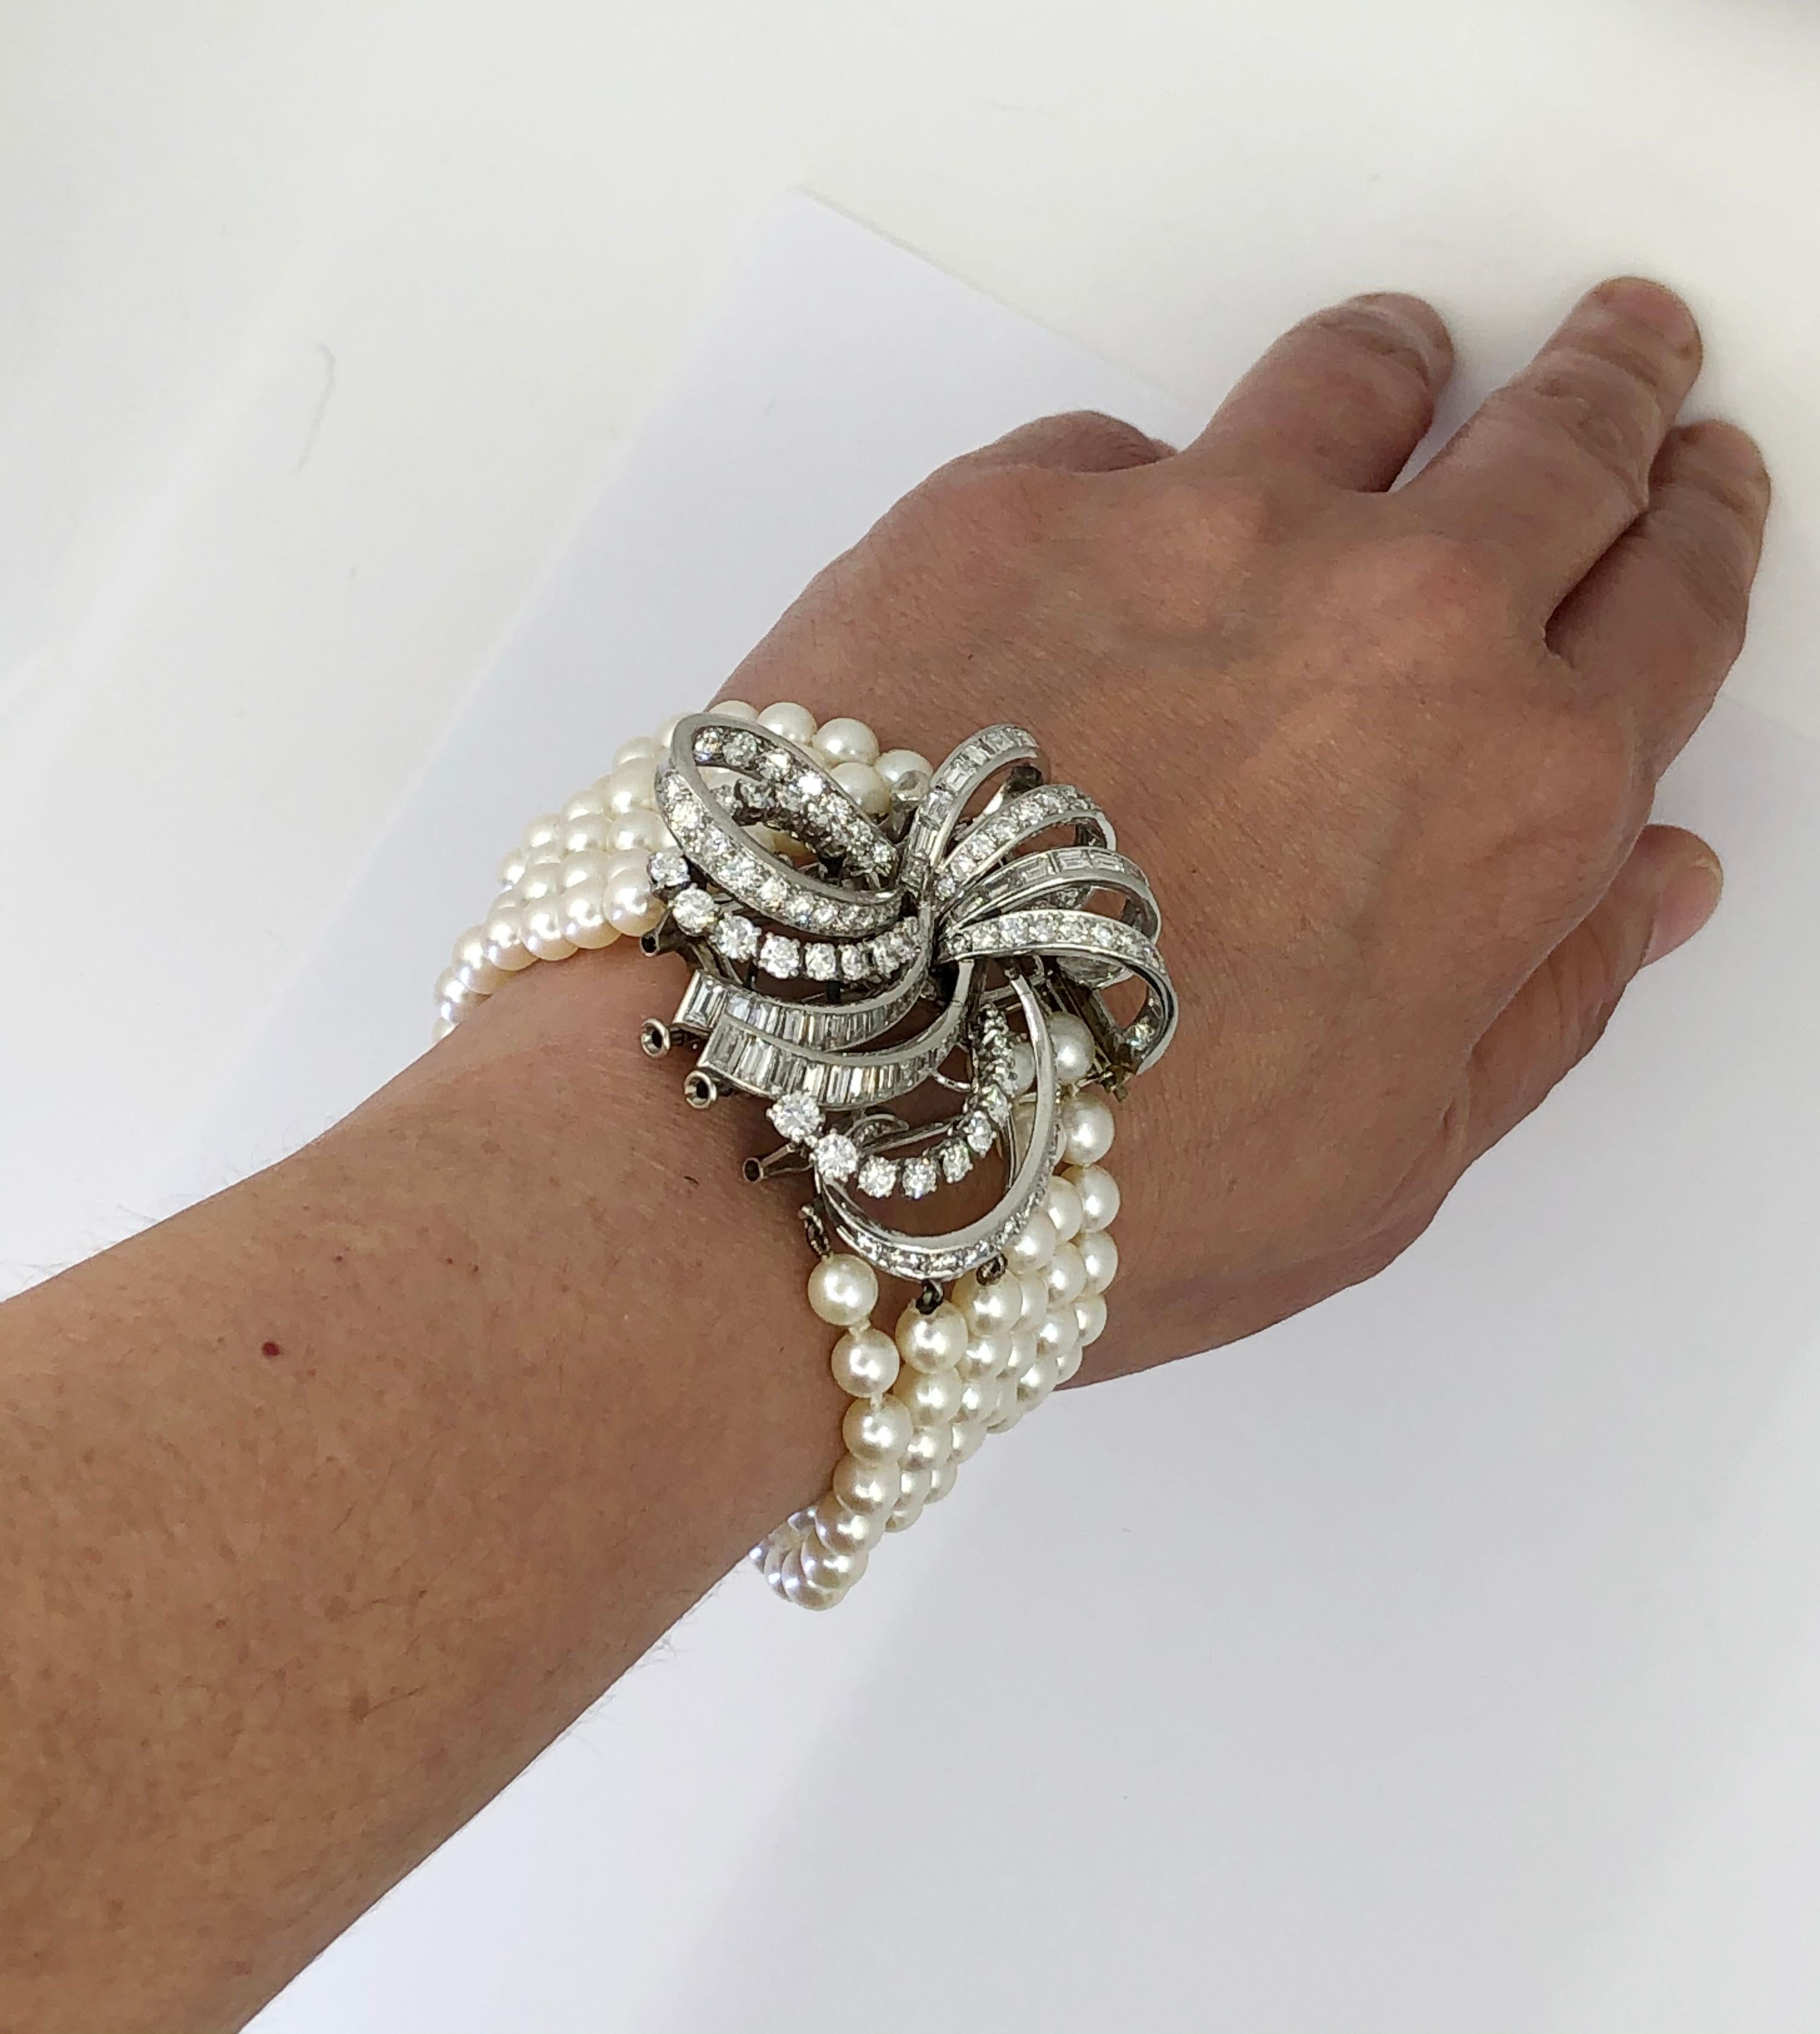 Boucheron Vintage 1950er Jahre Perlenarmband mit großem Diamantmotiv
Maße der Brosche: ca. 1,67